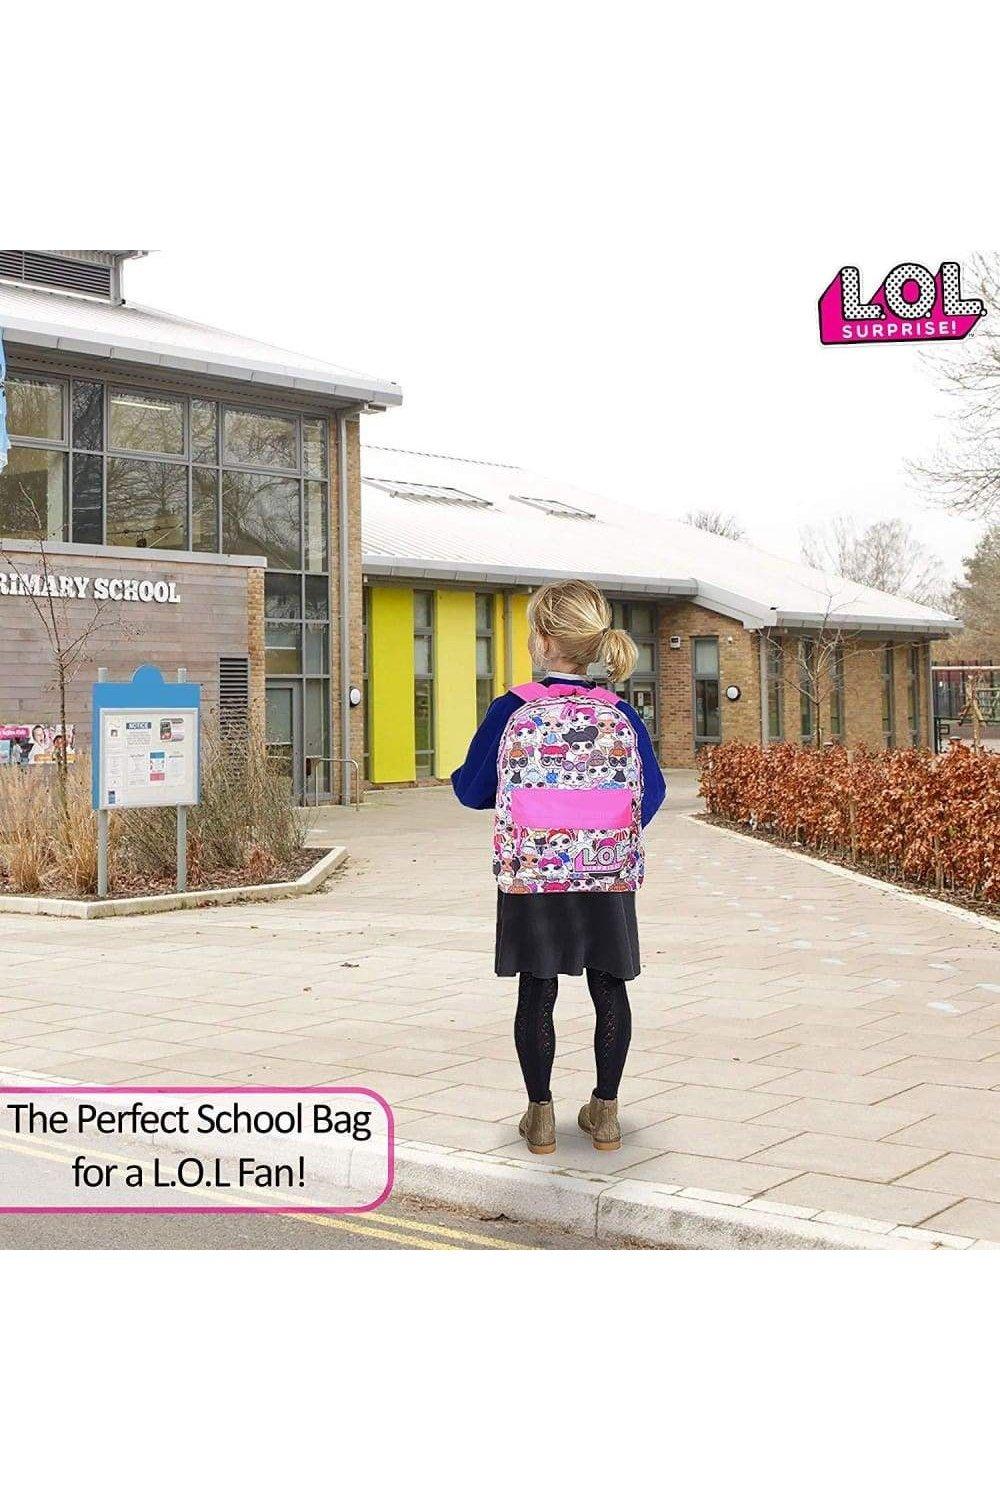 Школьный рюкзак с принтом кукол по всей поверхности L.O.L. Surprise, розовый женский холщовый школьный рюкзак с розовым принтом женский школьный рюкзак школьные сумки для девочек подростков 2018